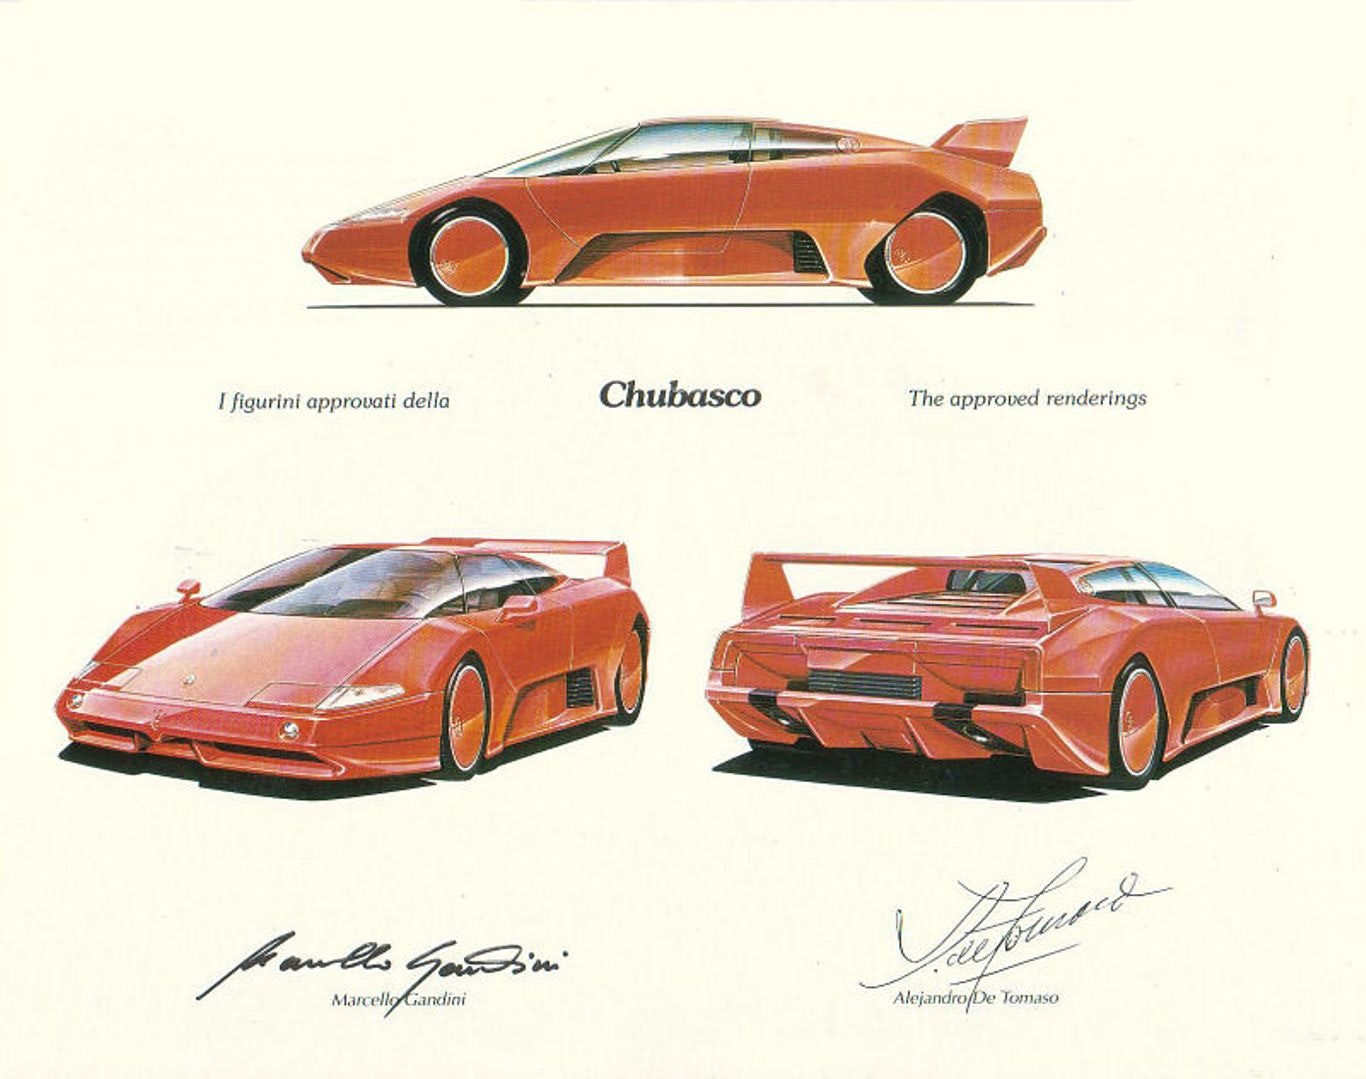 The Maserati Chubasco: the futuristic concept designed by Gandini